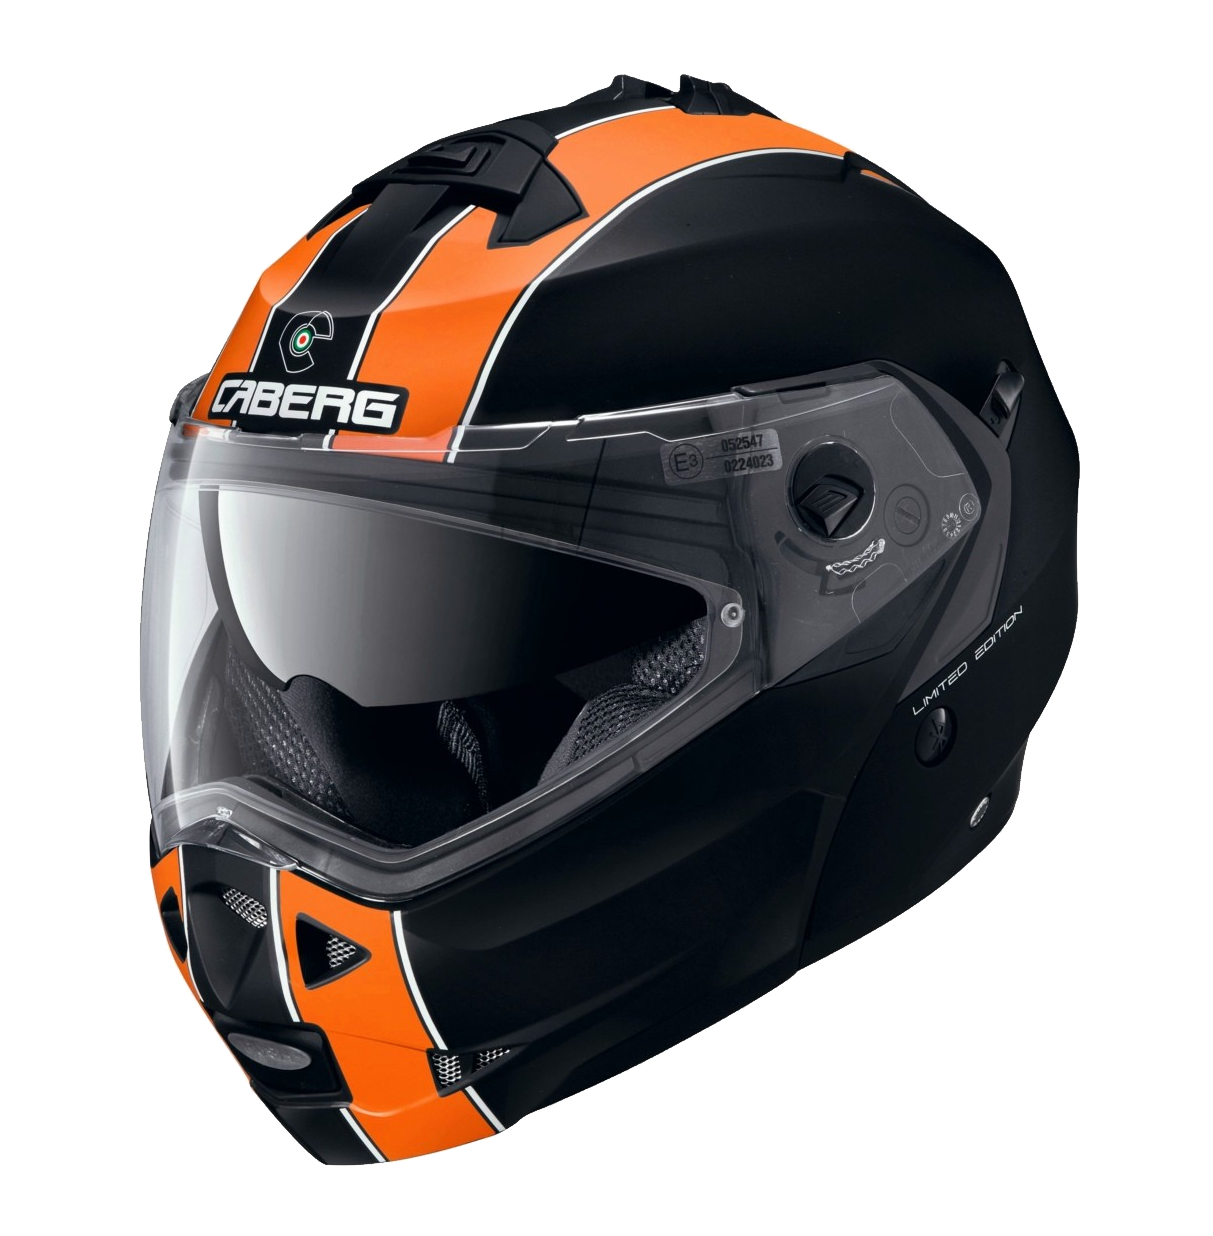 Мотоциклетный шлем PNG фото